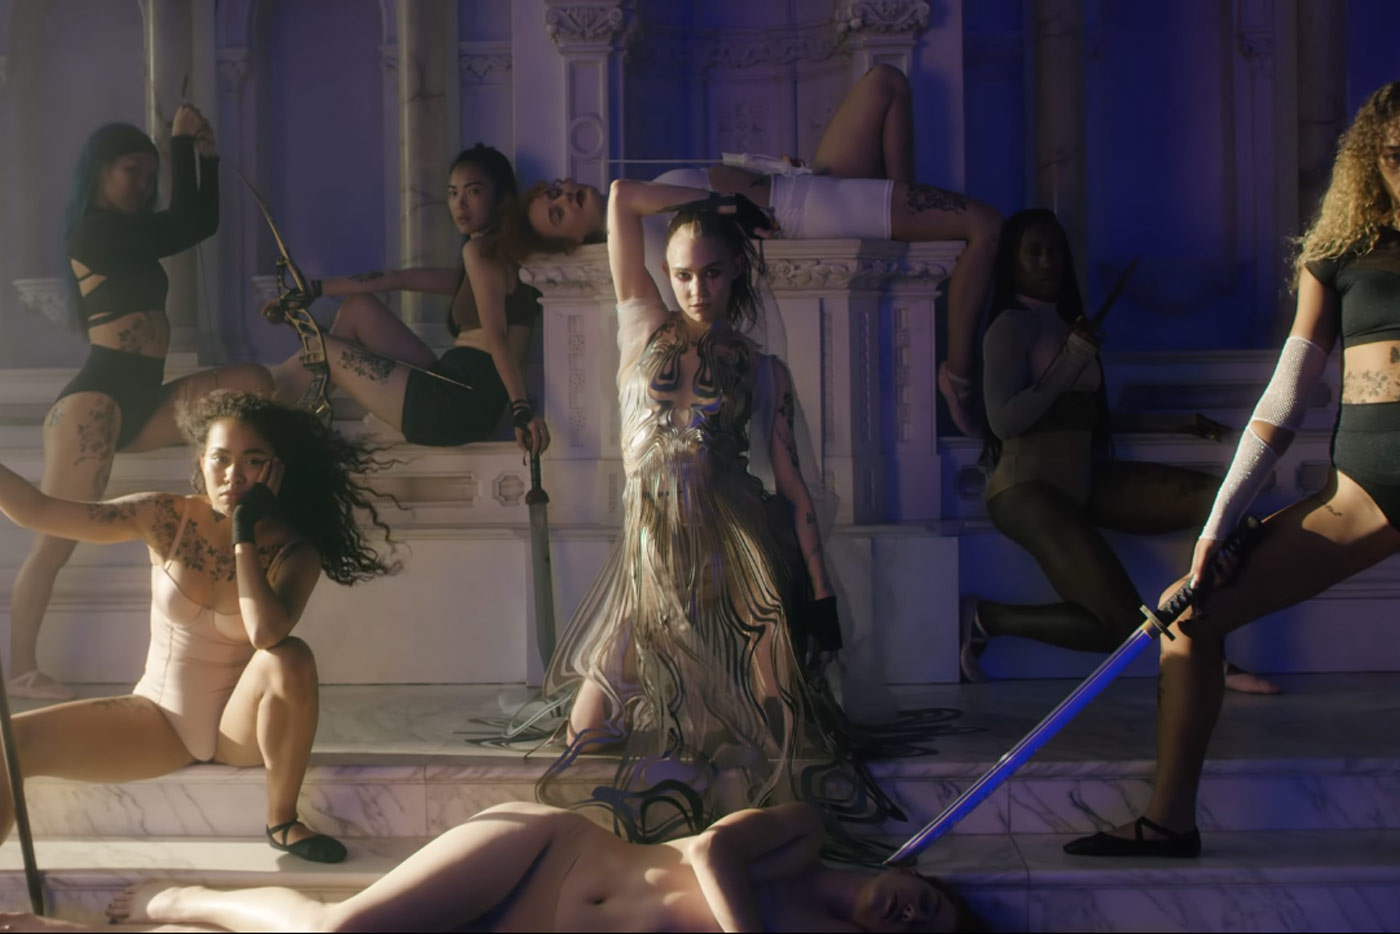 Grimes reaparece con "Violence", nuevo single y videoclip